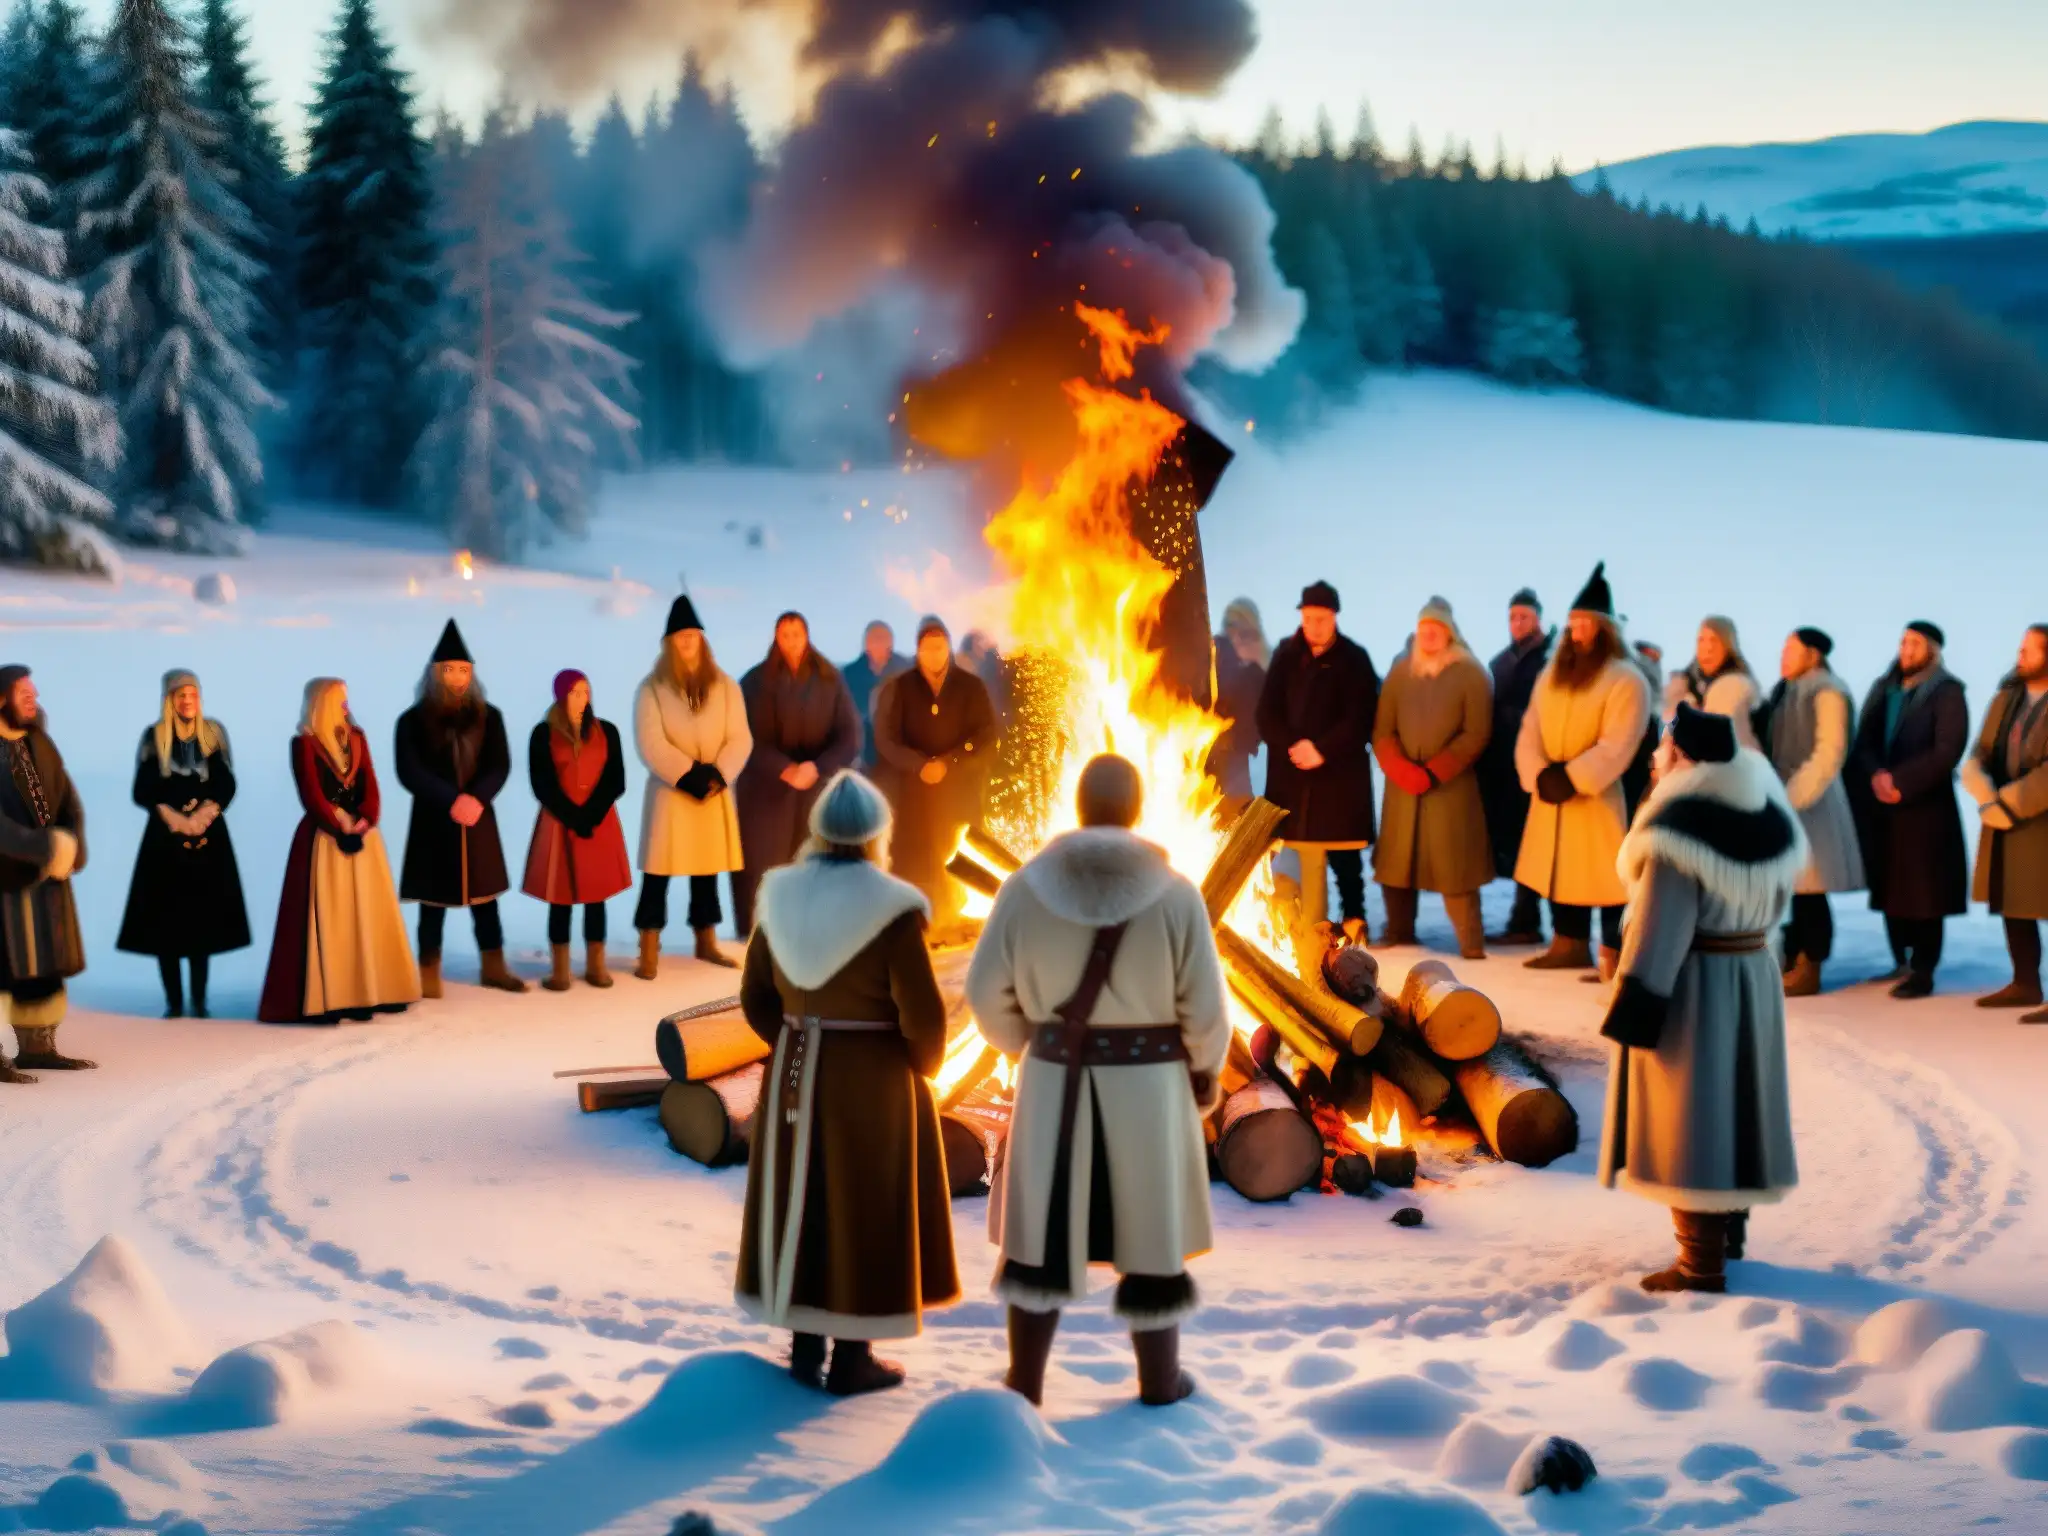 Grupo en trajes nórdicos celebra el solsticio de invierno alrededor de una fogata en un claro nevado, con ruinas antiguas de fondo